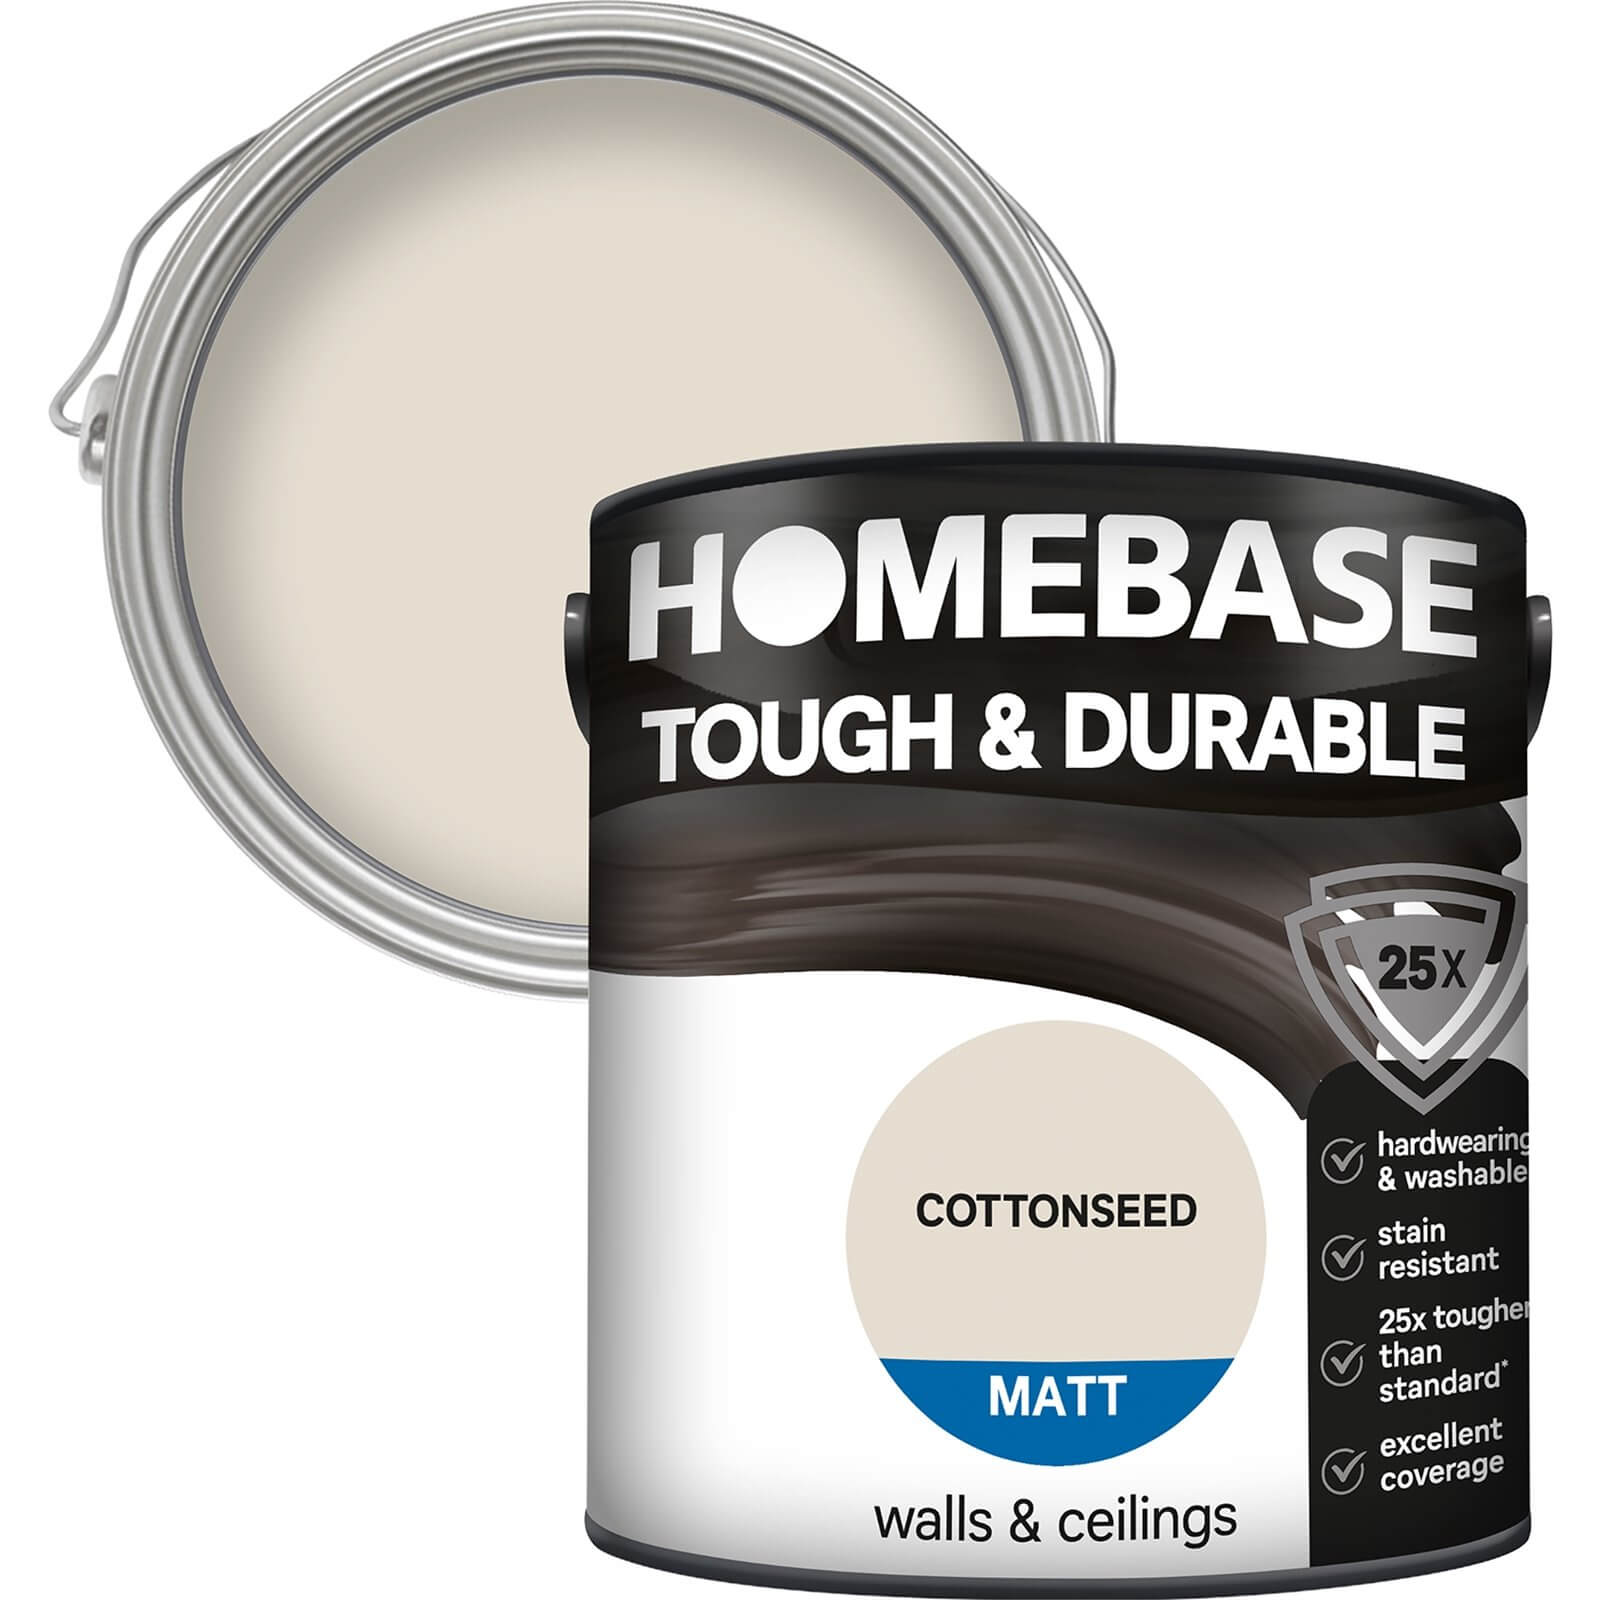 Homebase Tough & Durable Matt Paint Cottonseed - 2.5L